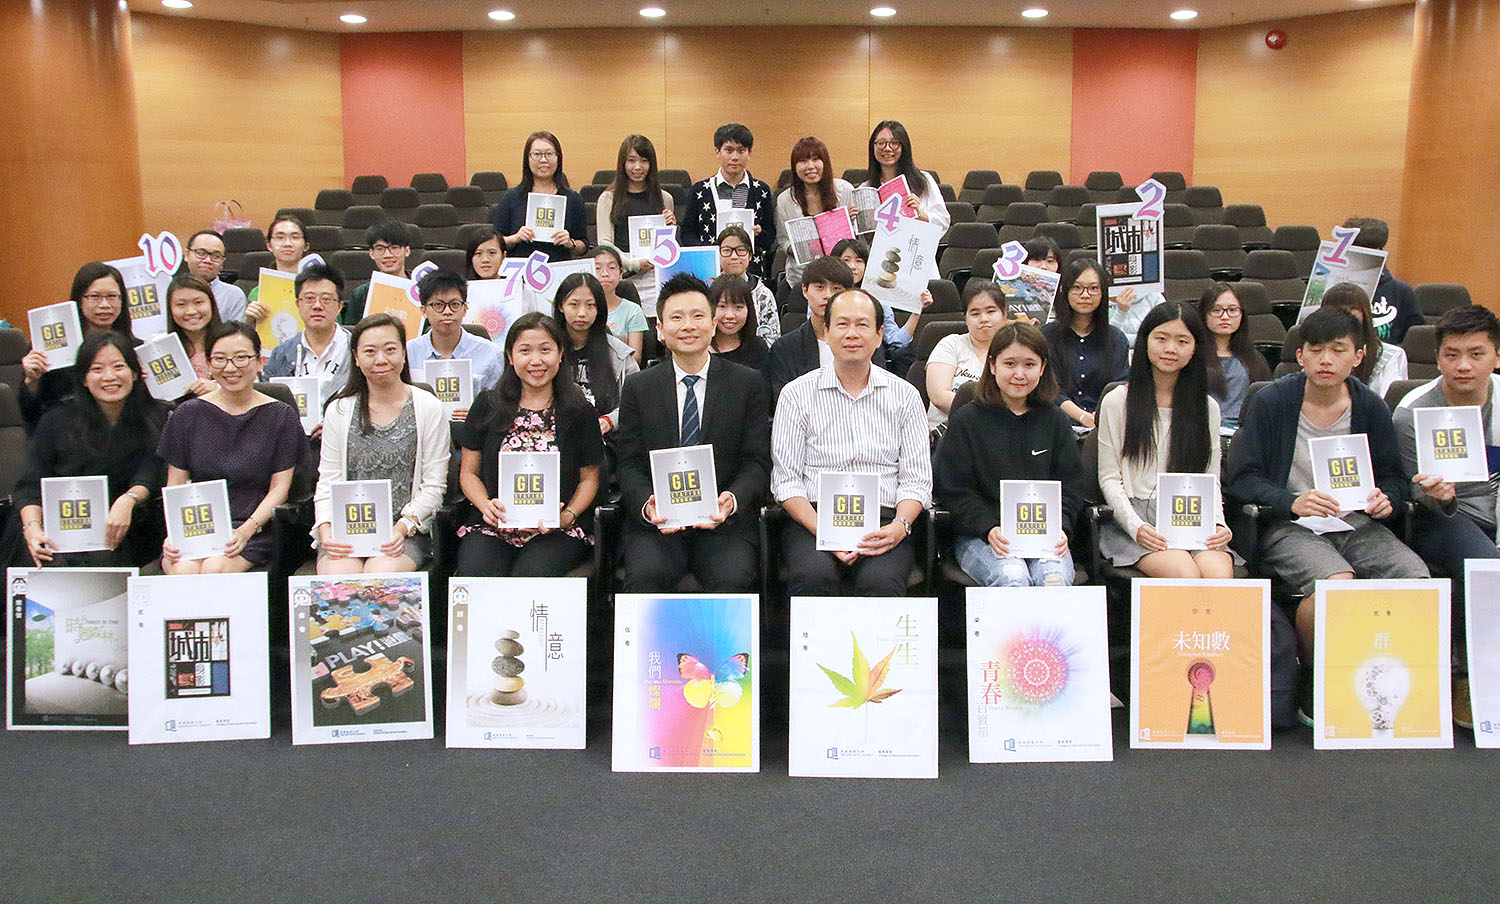  浸大国际学院总监刘信信博士（前排左五）及《覔Invisible》总编辑梁万如博士（前排右五）于新书发布会上与师生编辑团队合照。